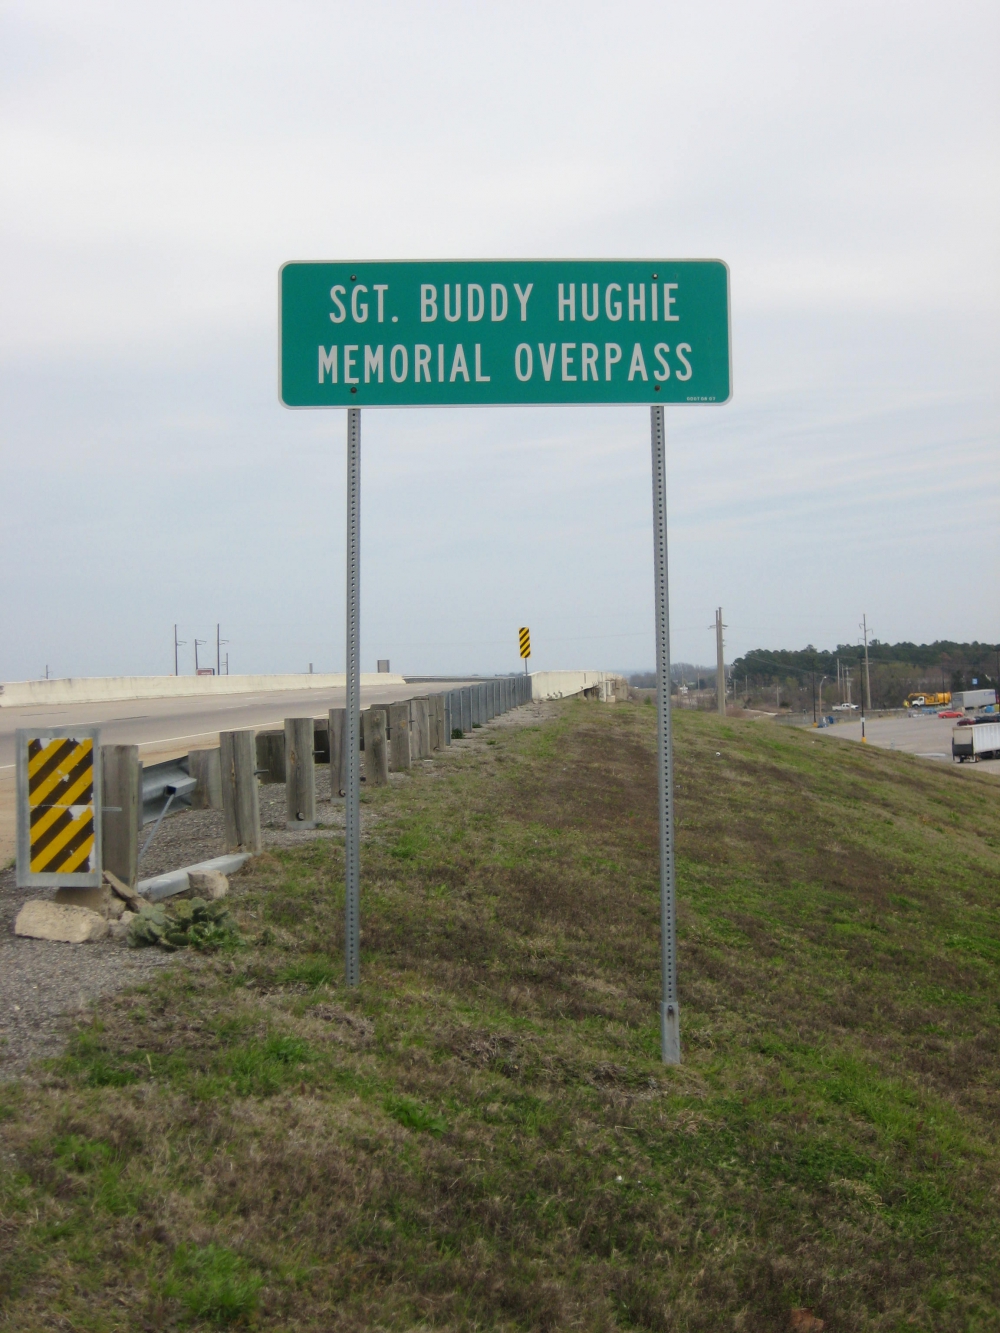 Sergeant Buddy Hughie Memorial Overpass